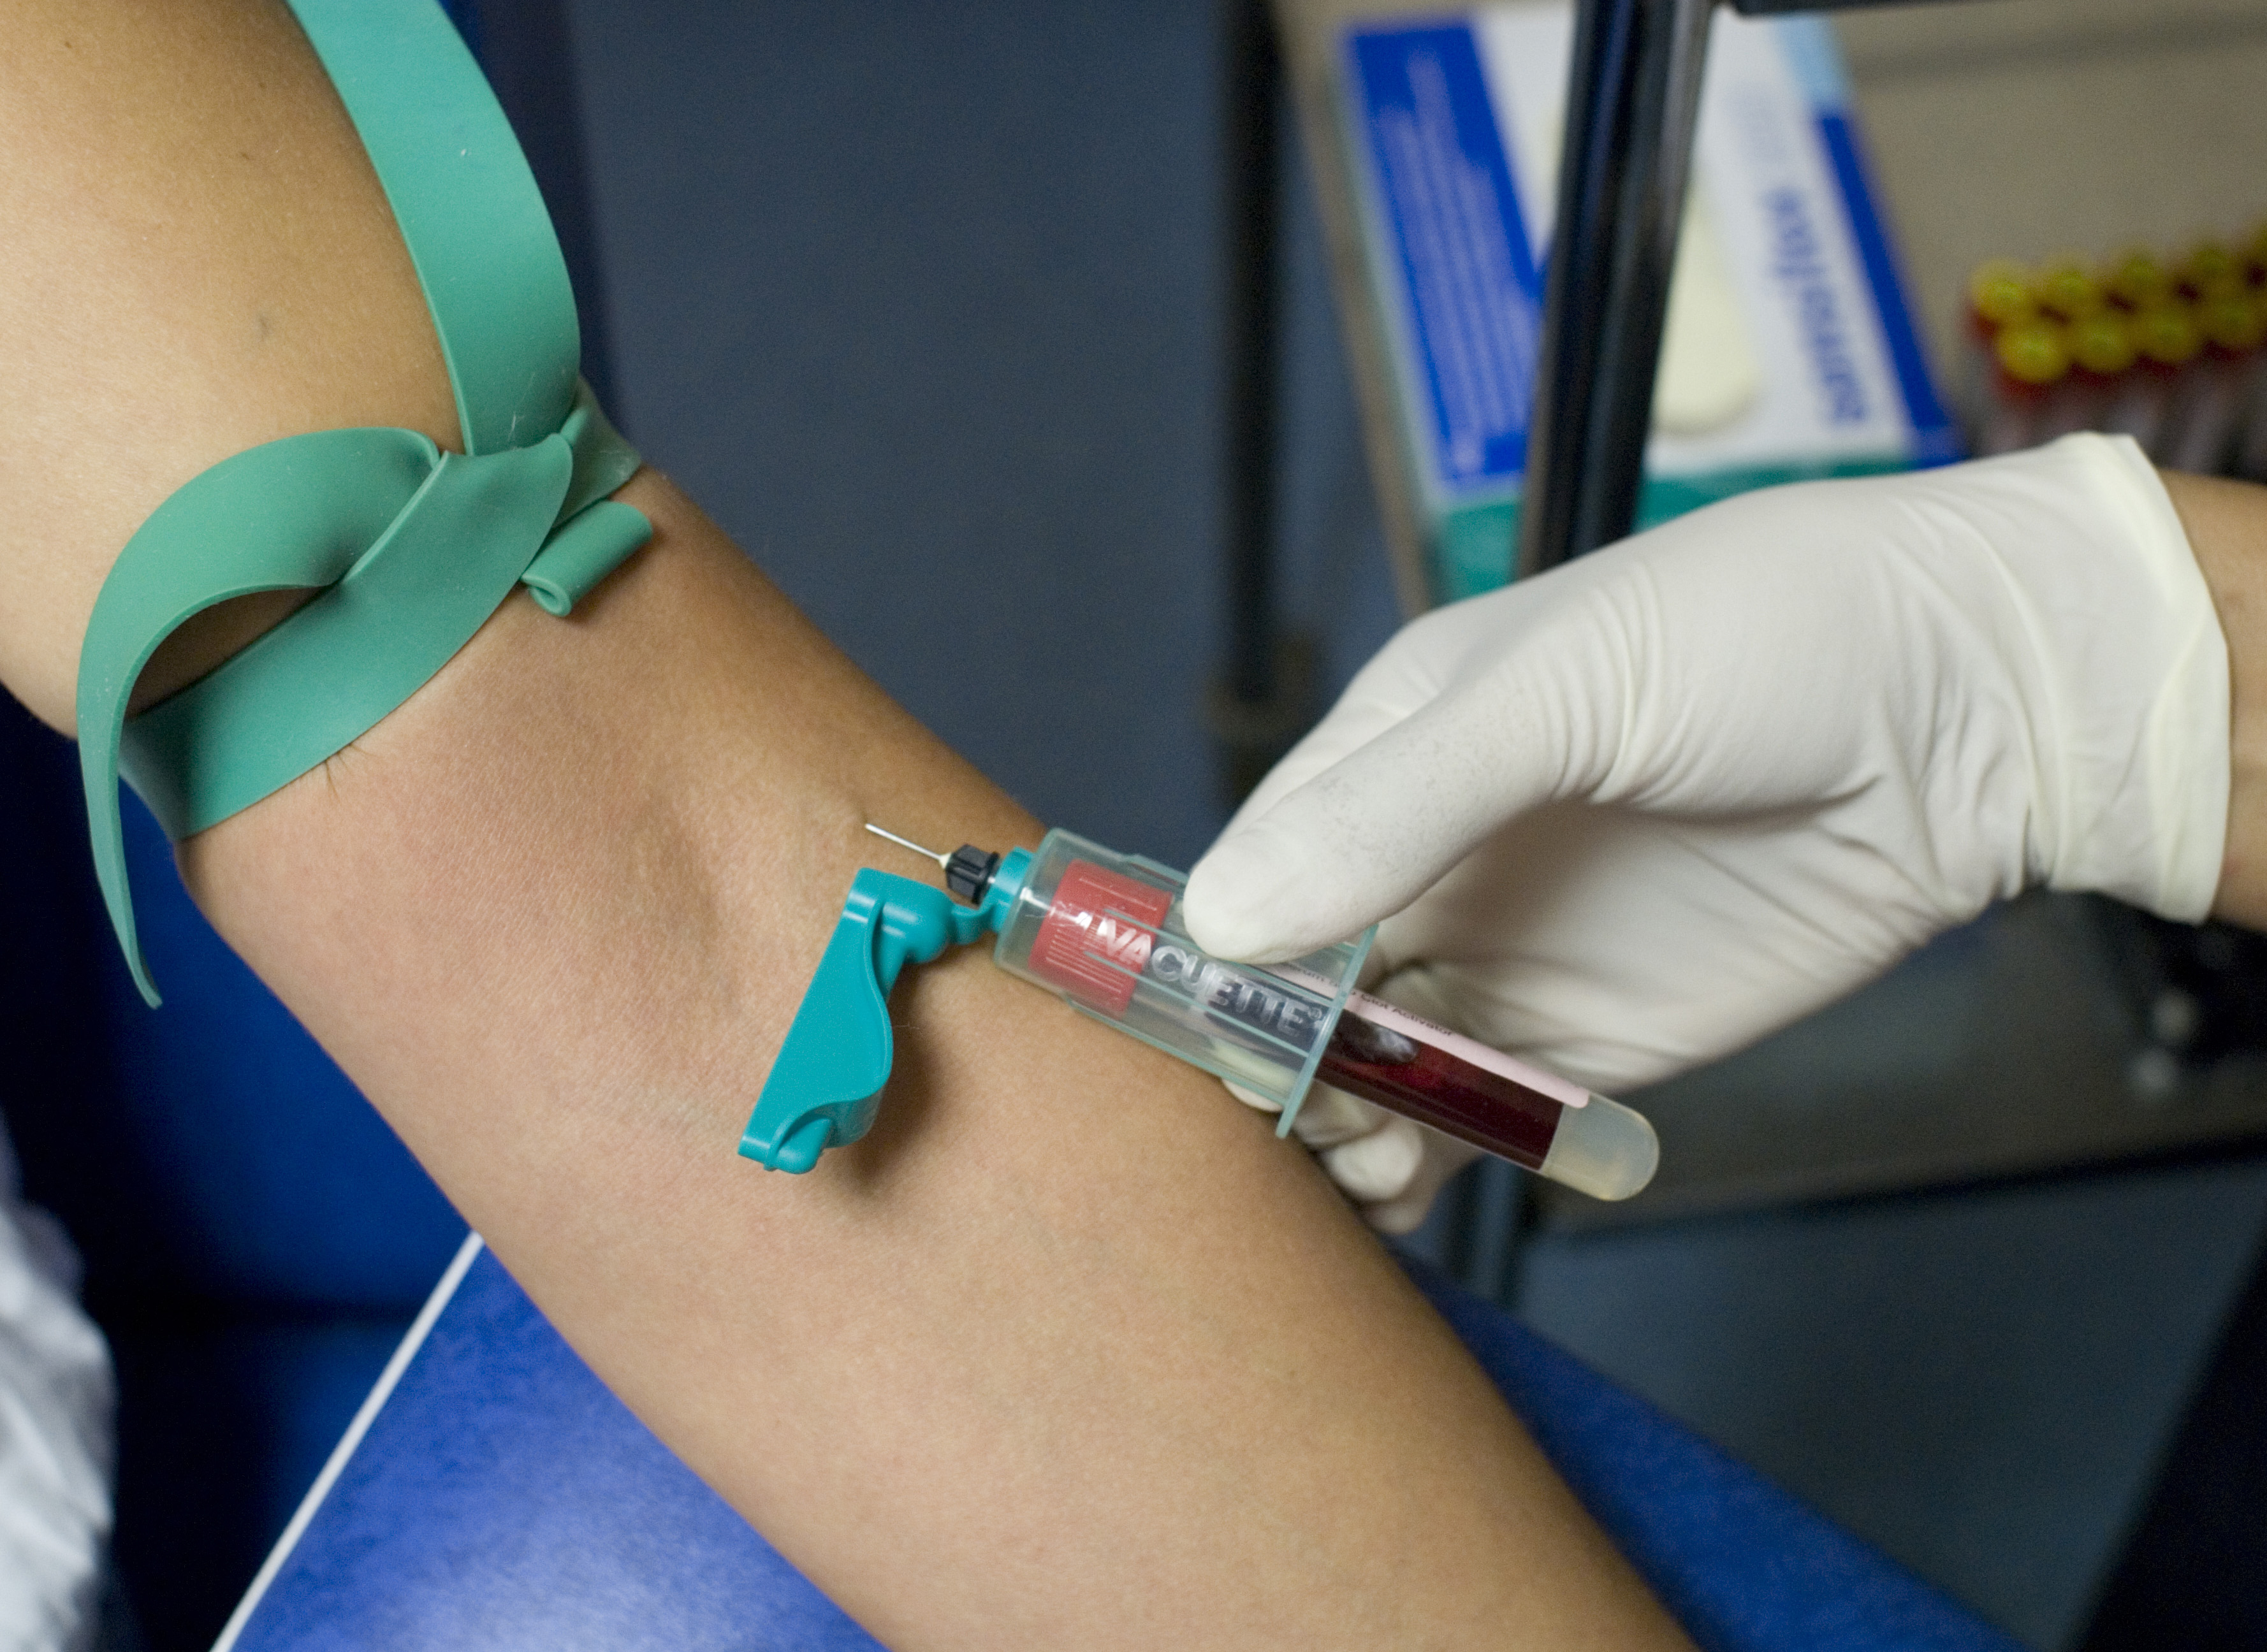 Un traitement préventif injectable pour réduire le risque de transmission  du VIH - NeozOne